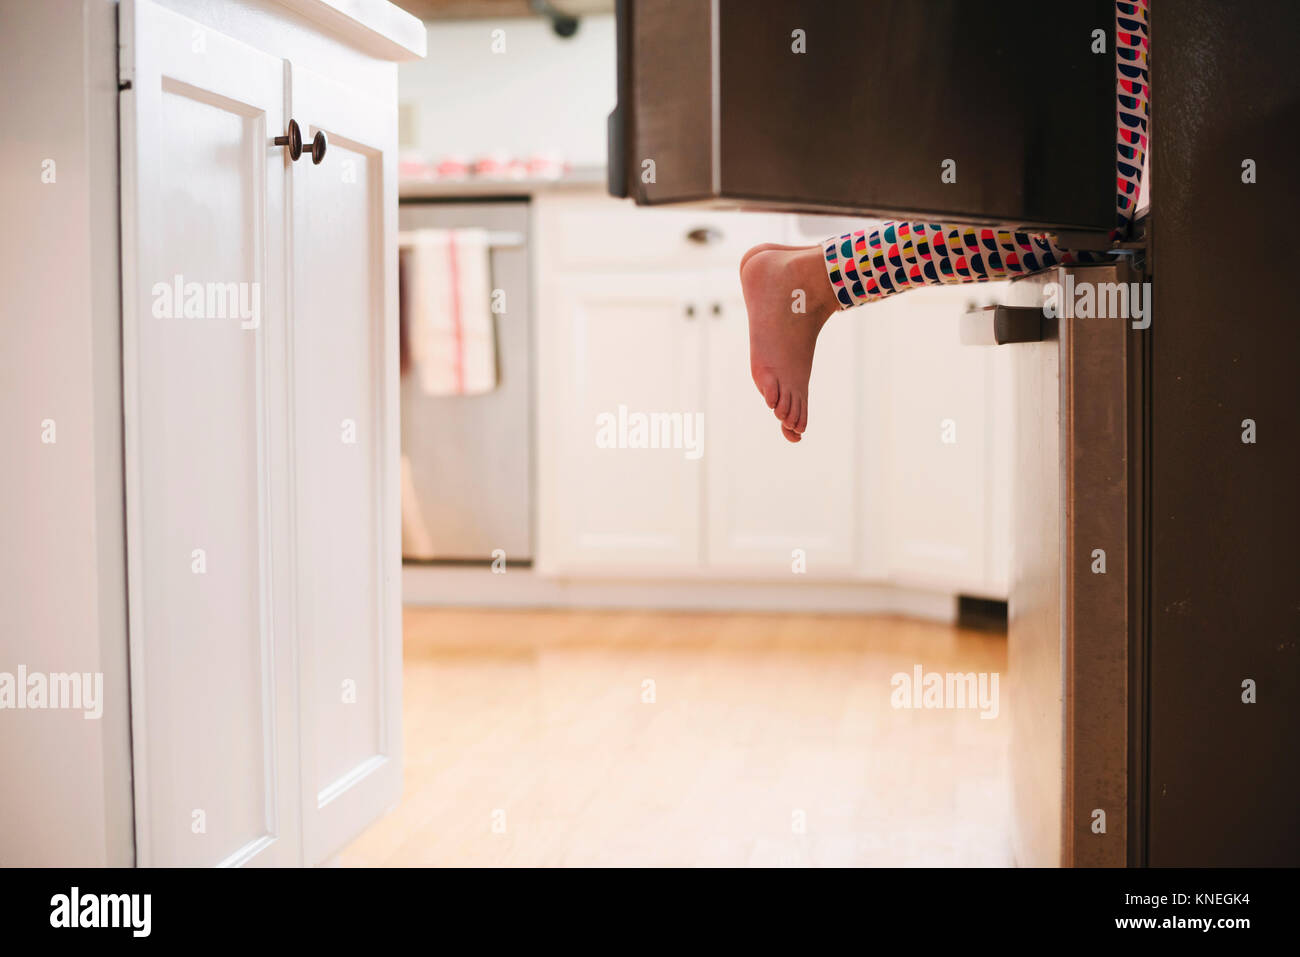 Young girl climbing into a refrigerator Stock Photo